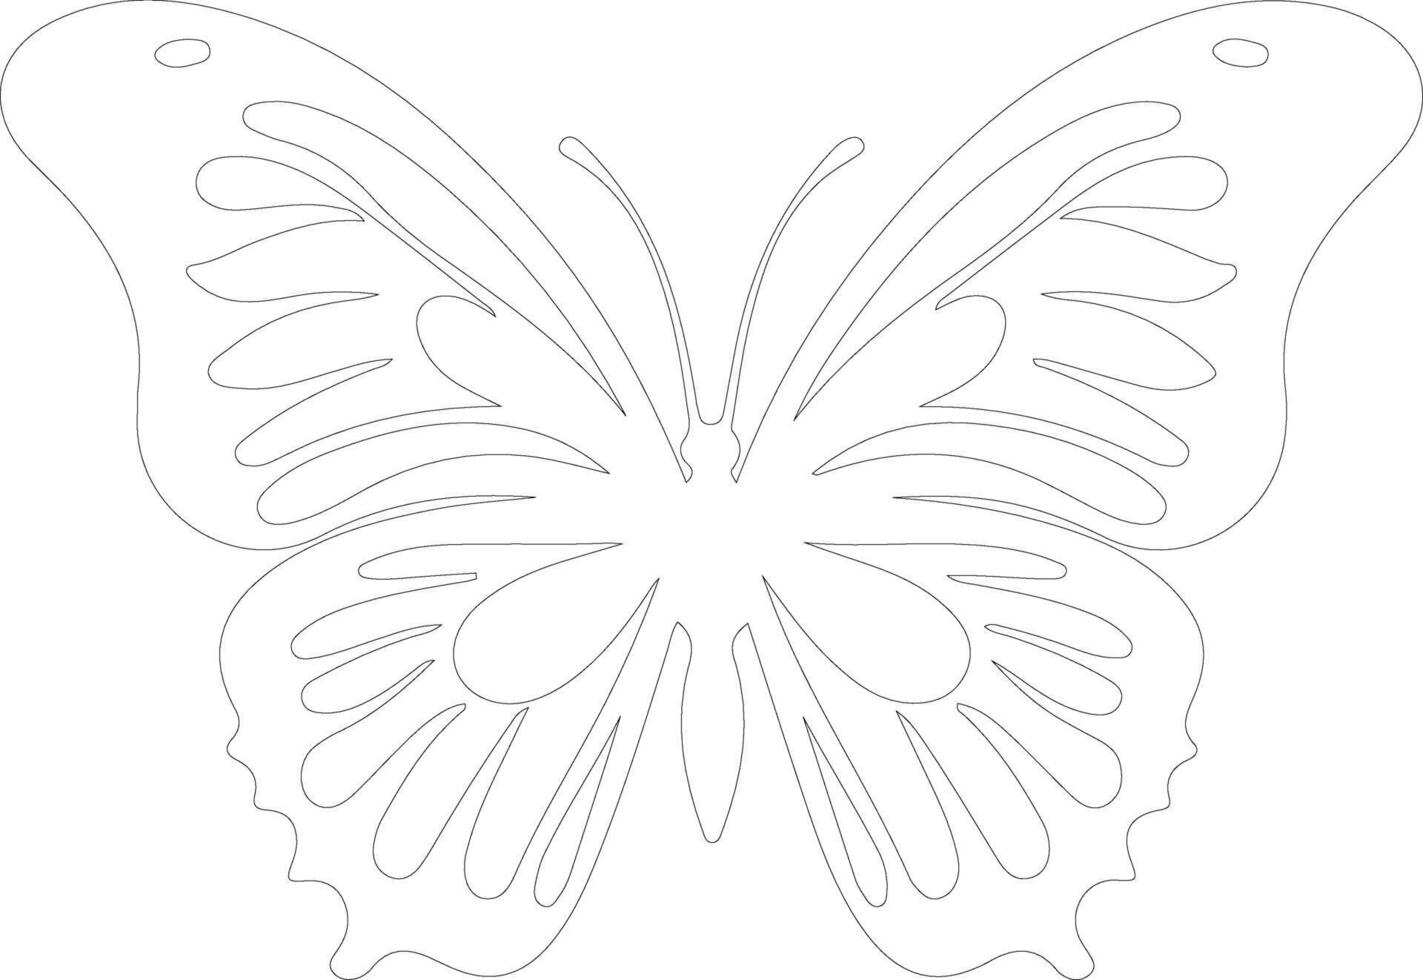 monark fjäril översikt silhuett vektor